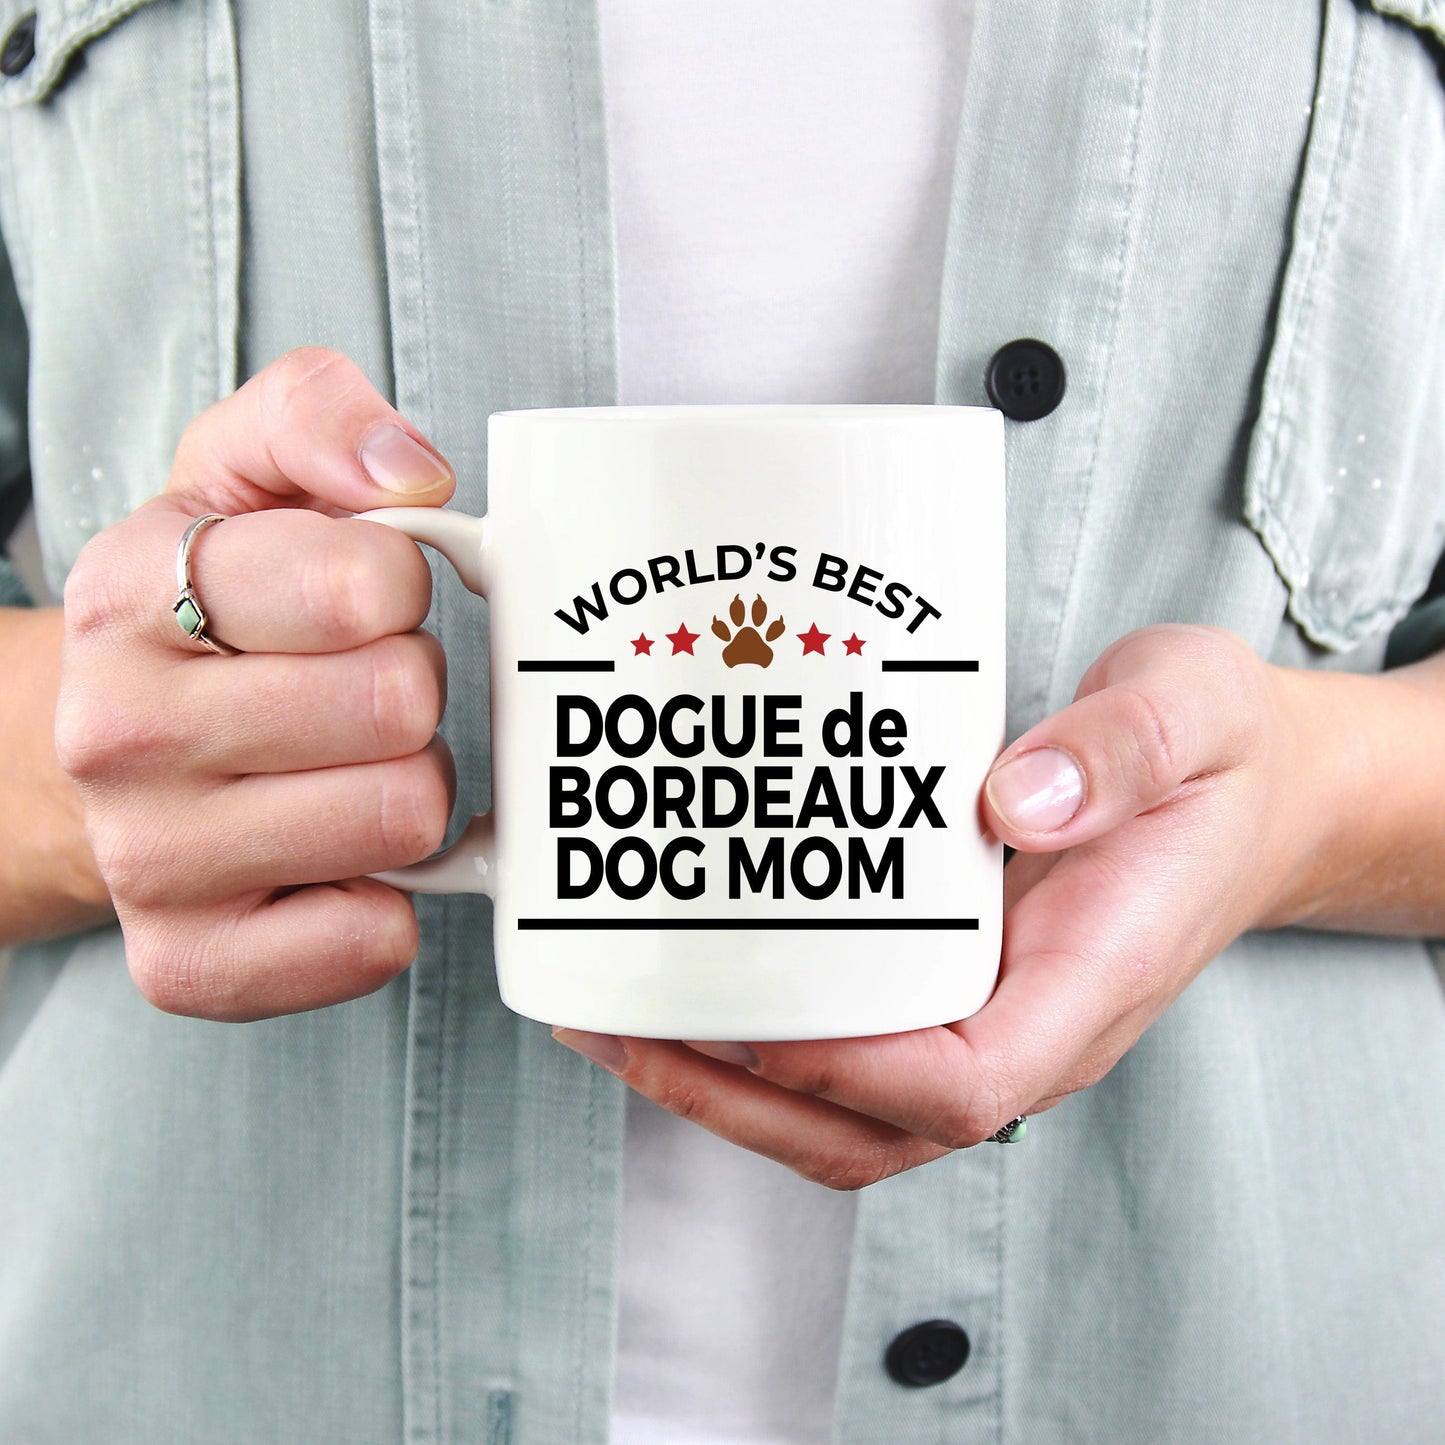 Dogue de Bordeaux Dog Mom Coffee Mug